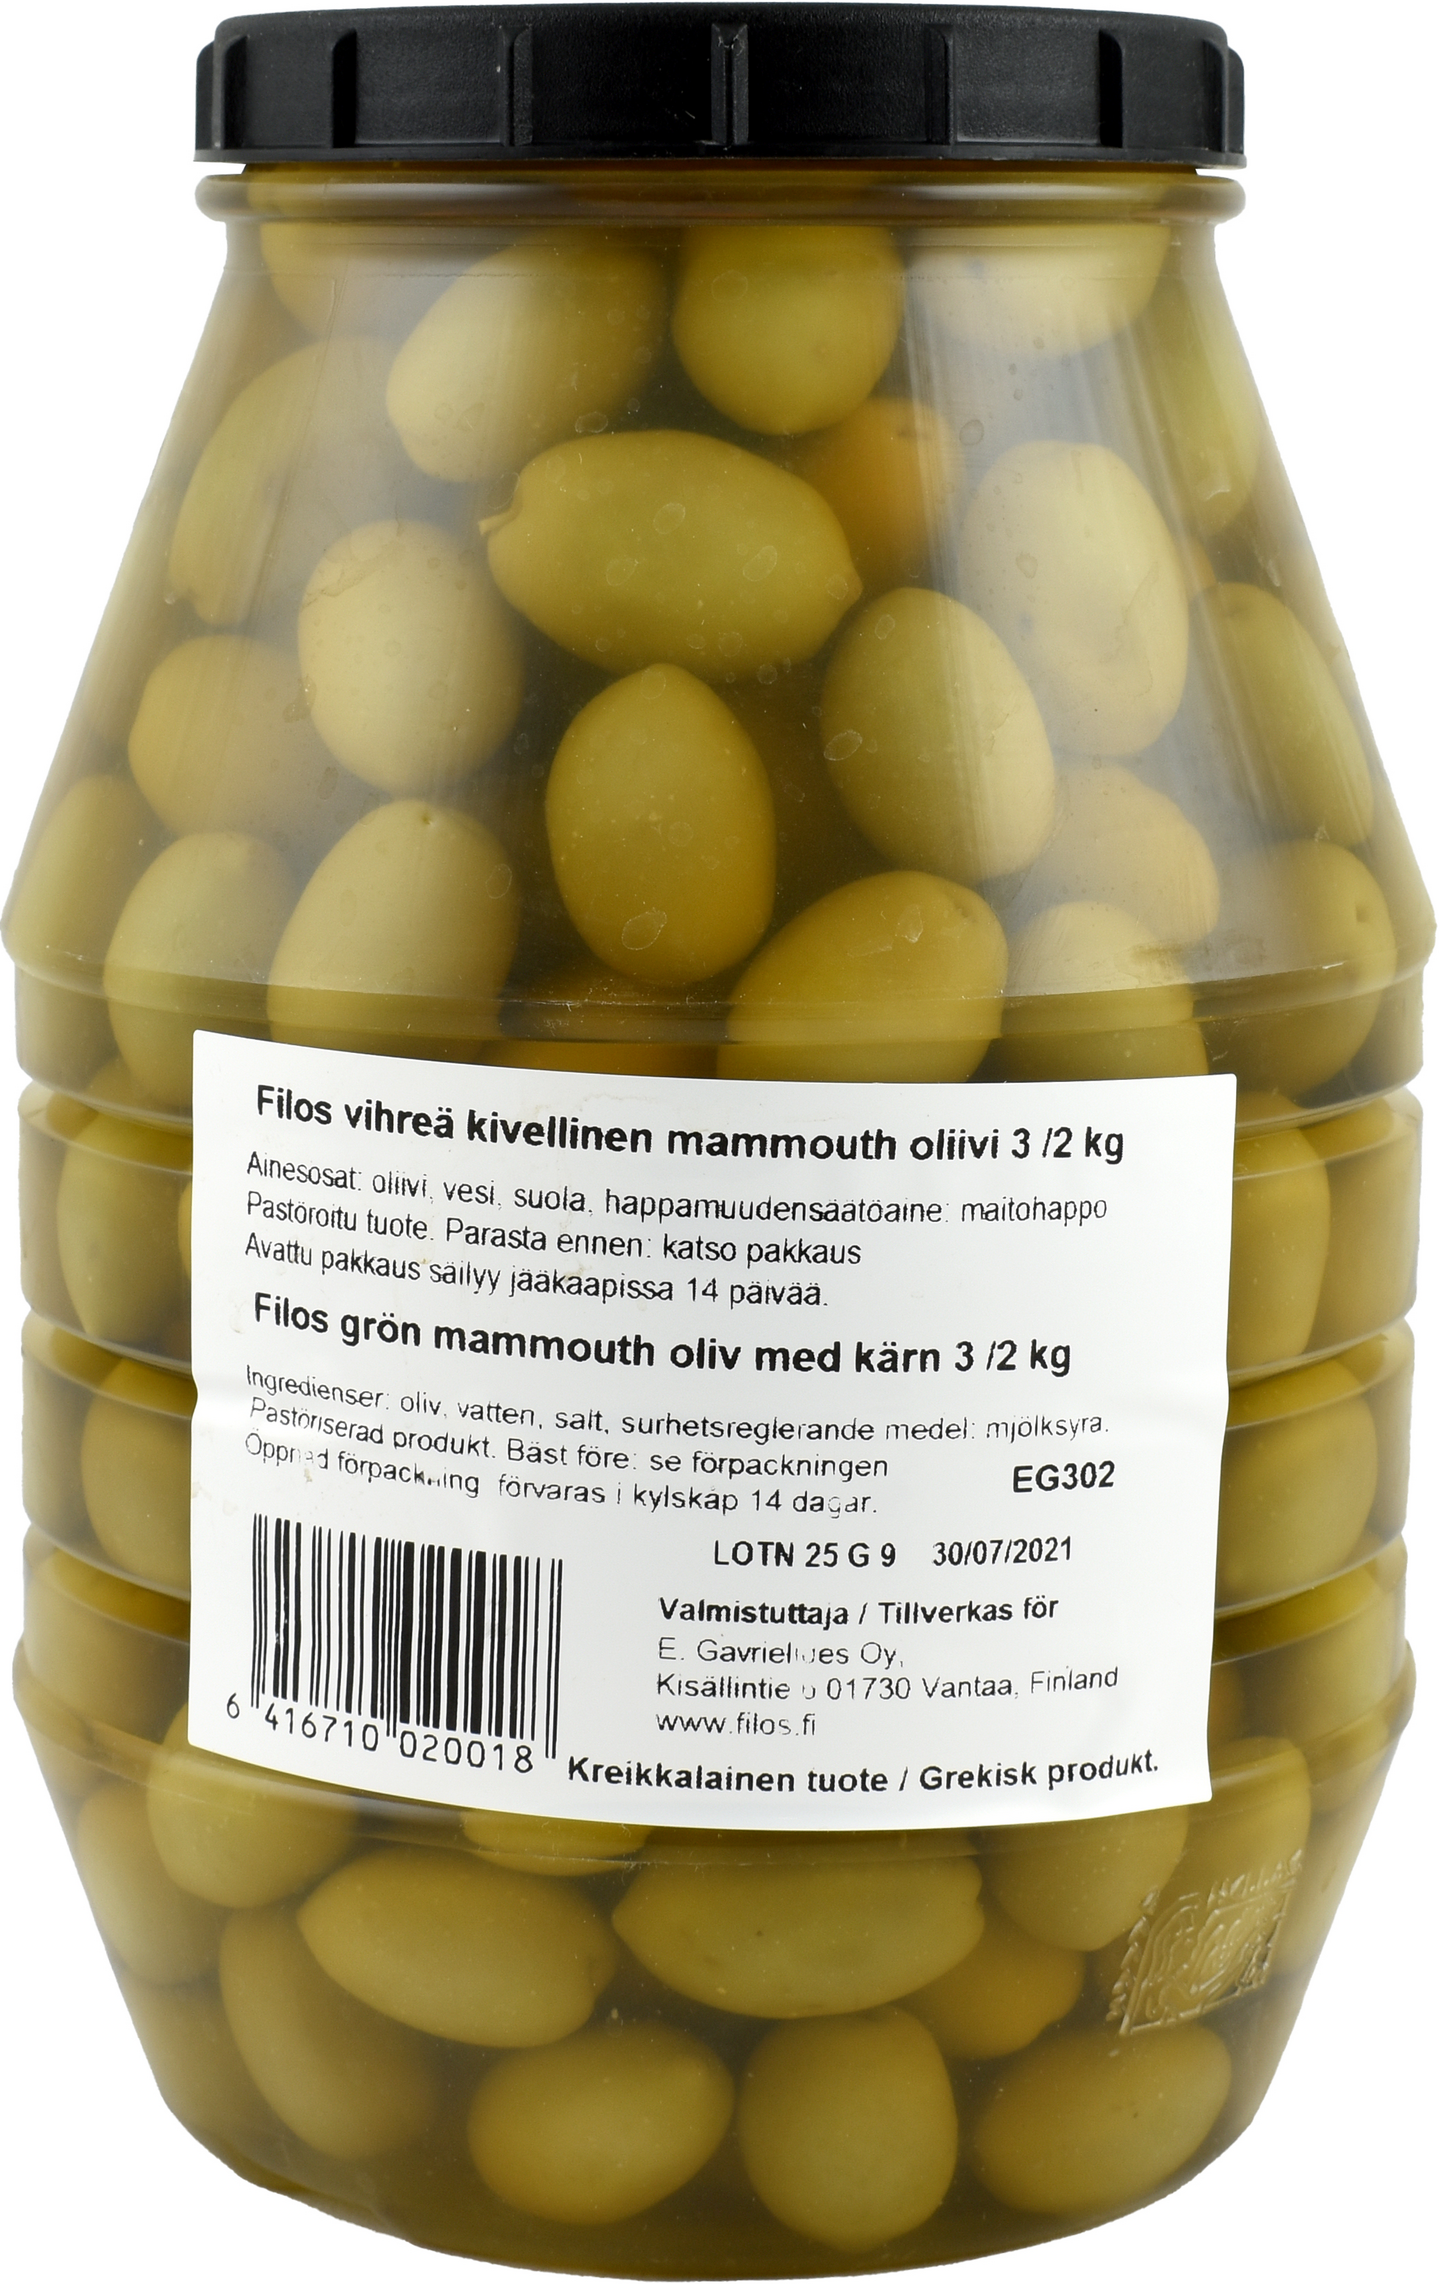 Filos vihreä oliivi 3/2kg mammouth